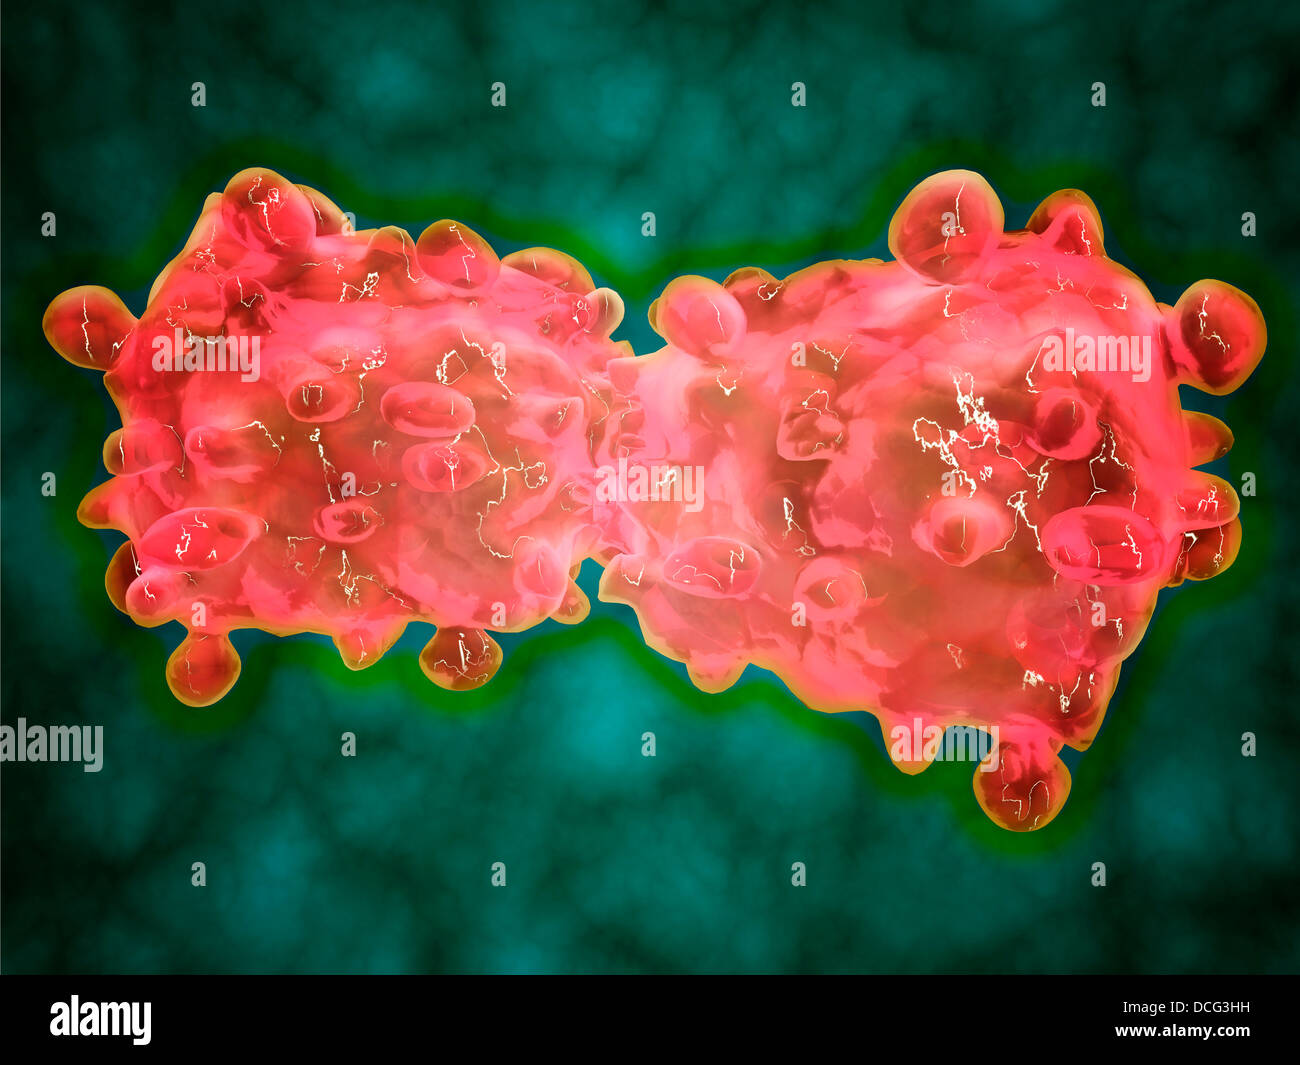 Mikroskopische Ansicht einer Leukämie-Zelle. Stockfoto